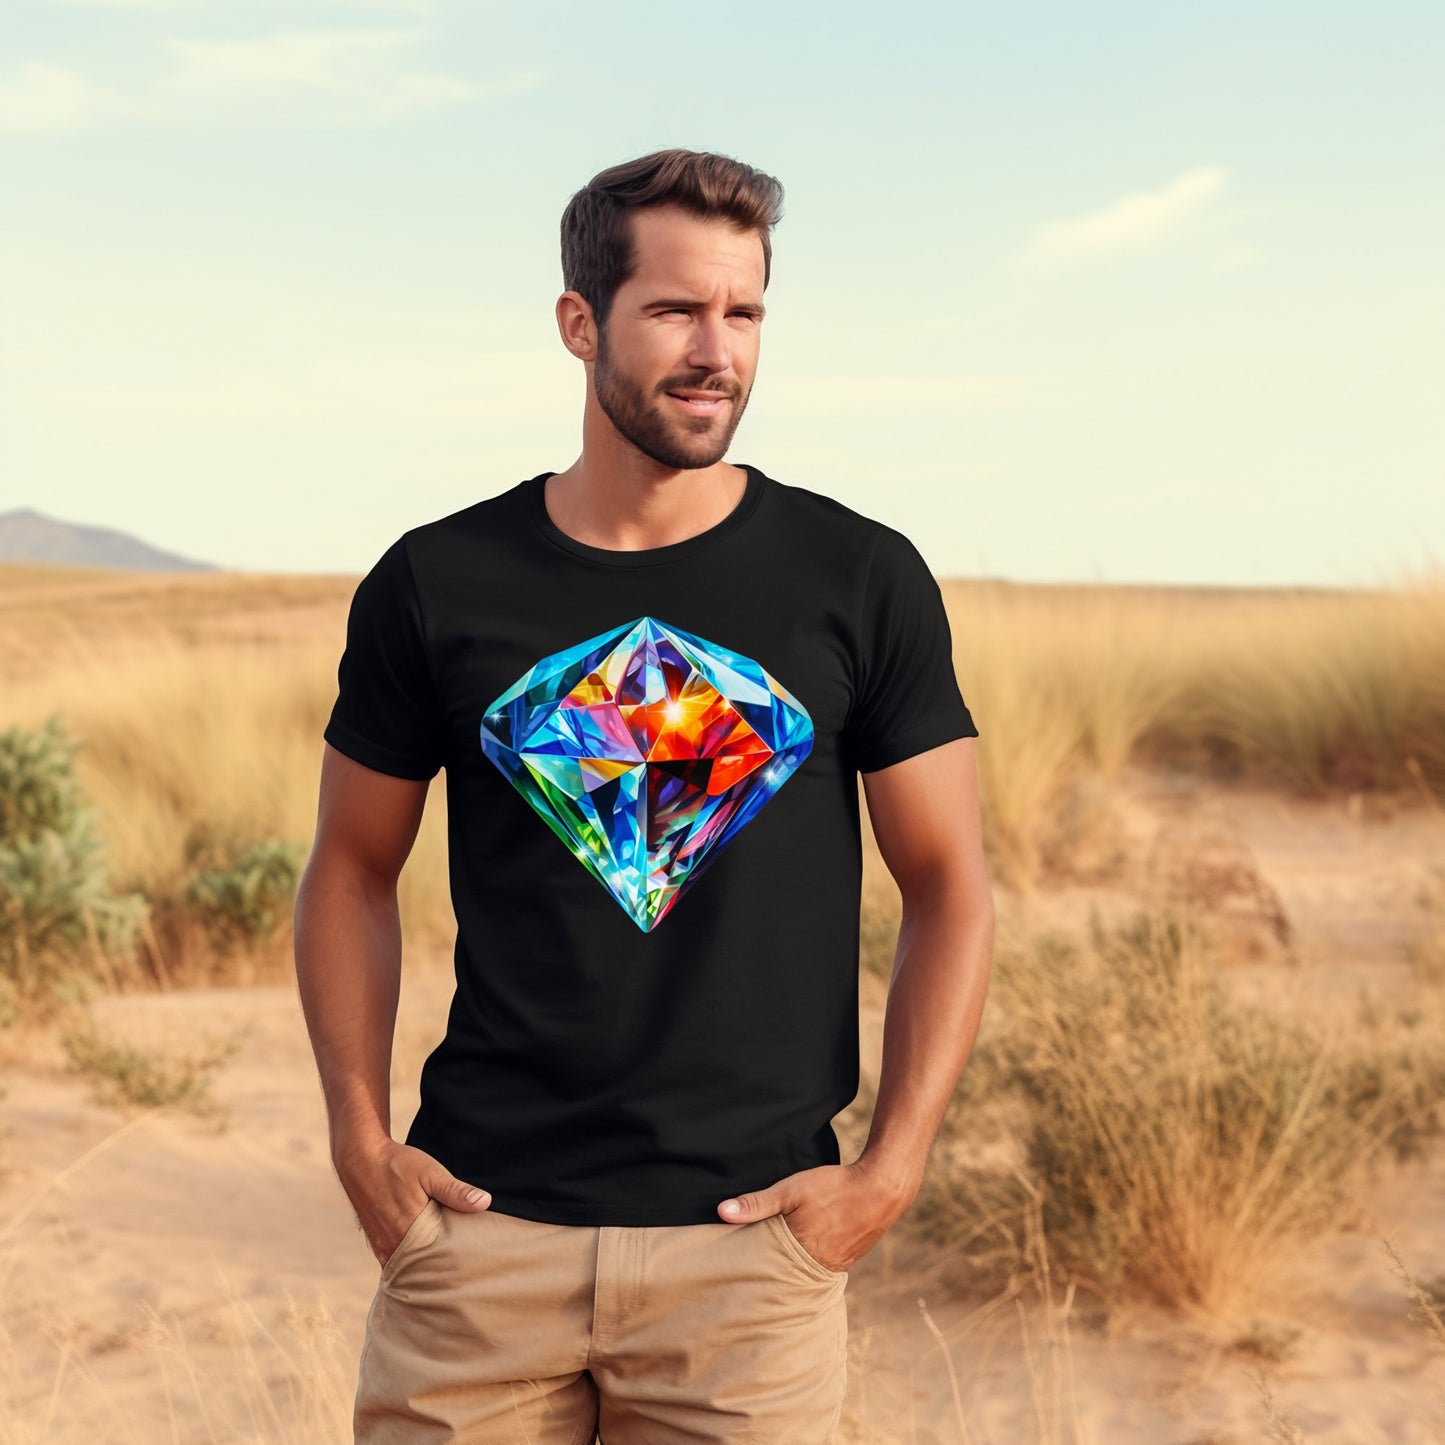 Vyras stovintis dykumoje su "Diamond Hearth" marškinėliais iš Designedbyme.lt, kuriuose spalvotas deimanto šviesos vaizdas simbolizuoja grožio, įvairovės ir tvirtumo simbiozę, Vyriški marškinėliai, Visi produktai